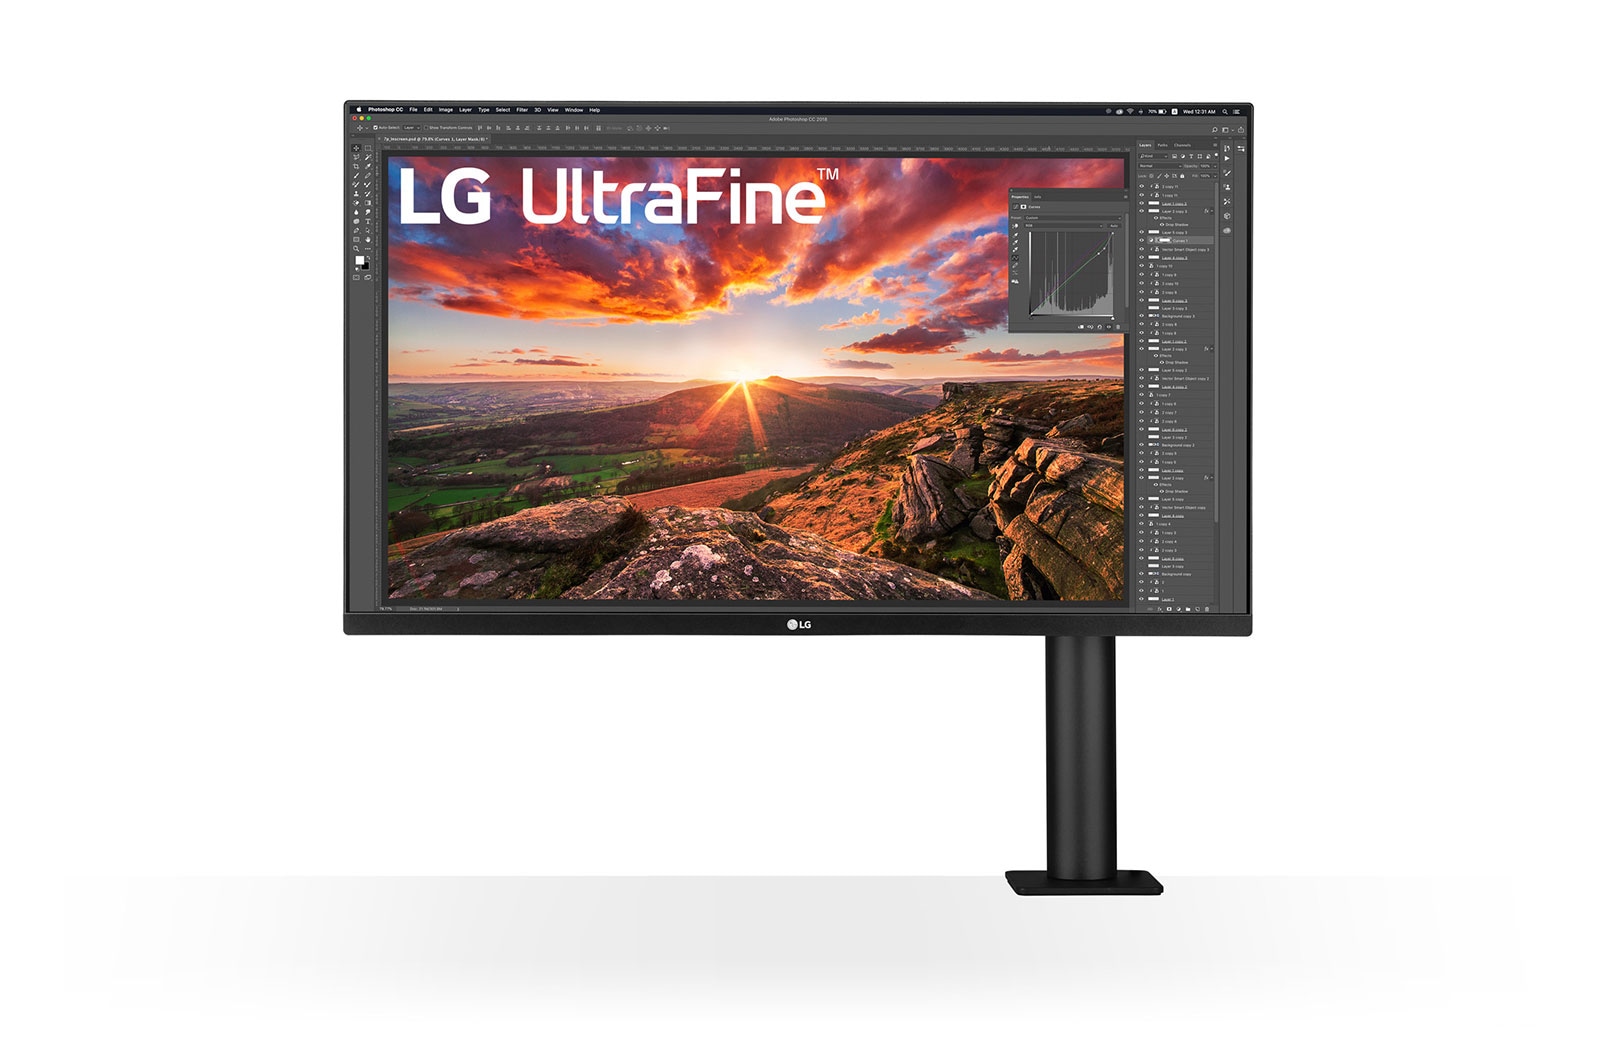 LG 31,5 Zoll UltraFine™ Ergo Monitor mit HDR10, IPS und UHD 4K-Auflösung, 32UN880-B